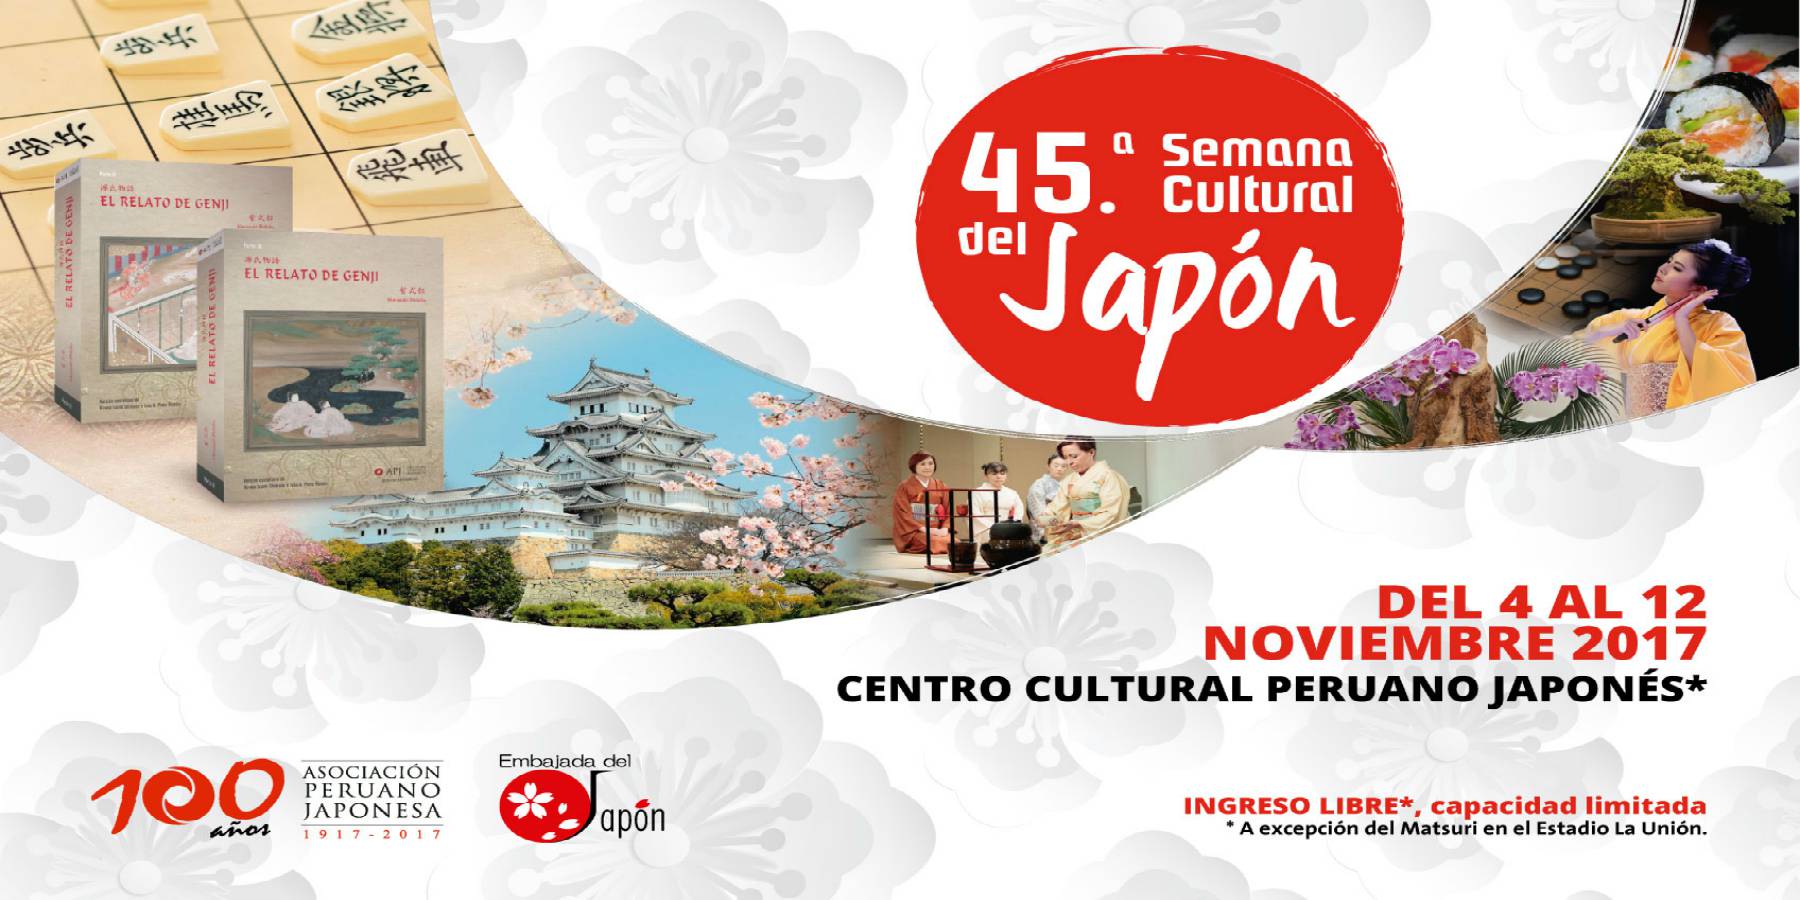 Llega la 45.a Semana Cultural del Japón